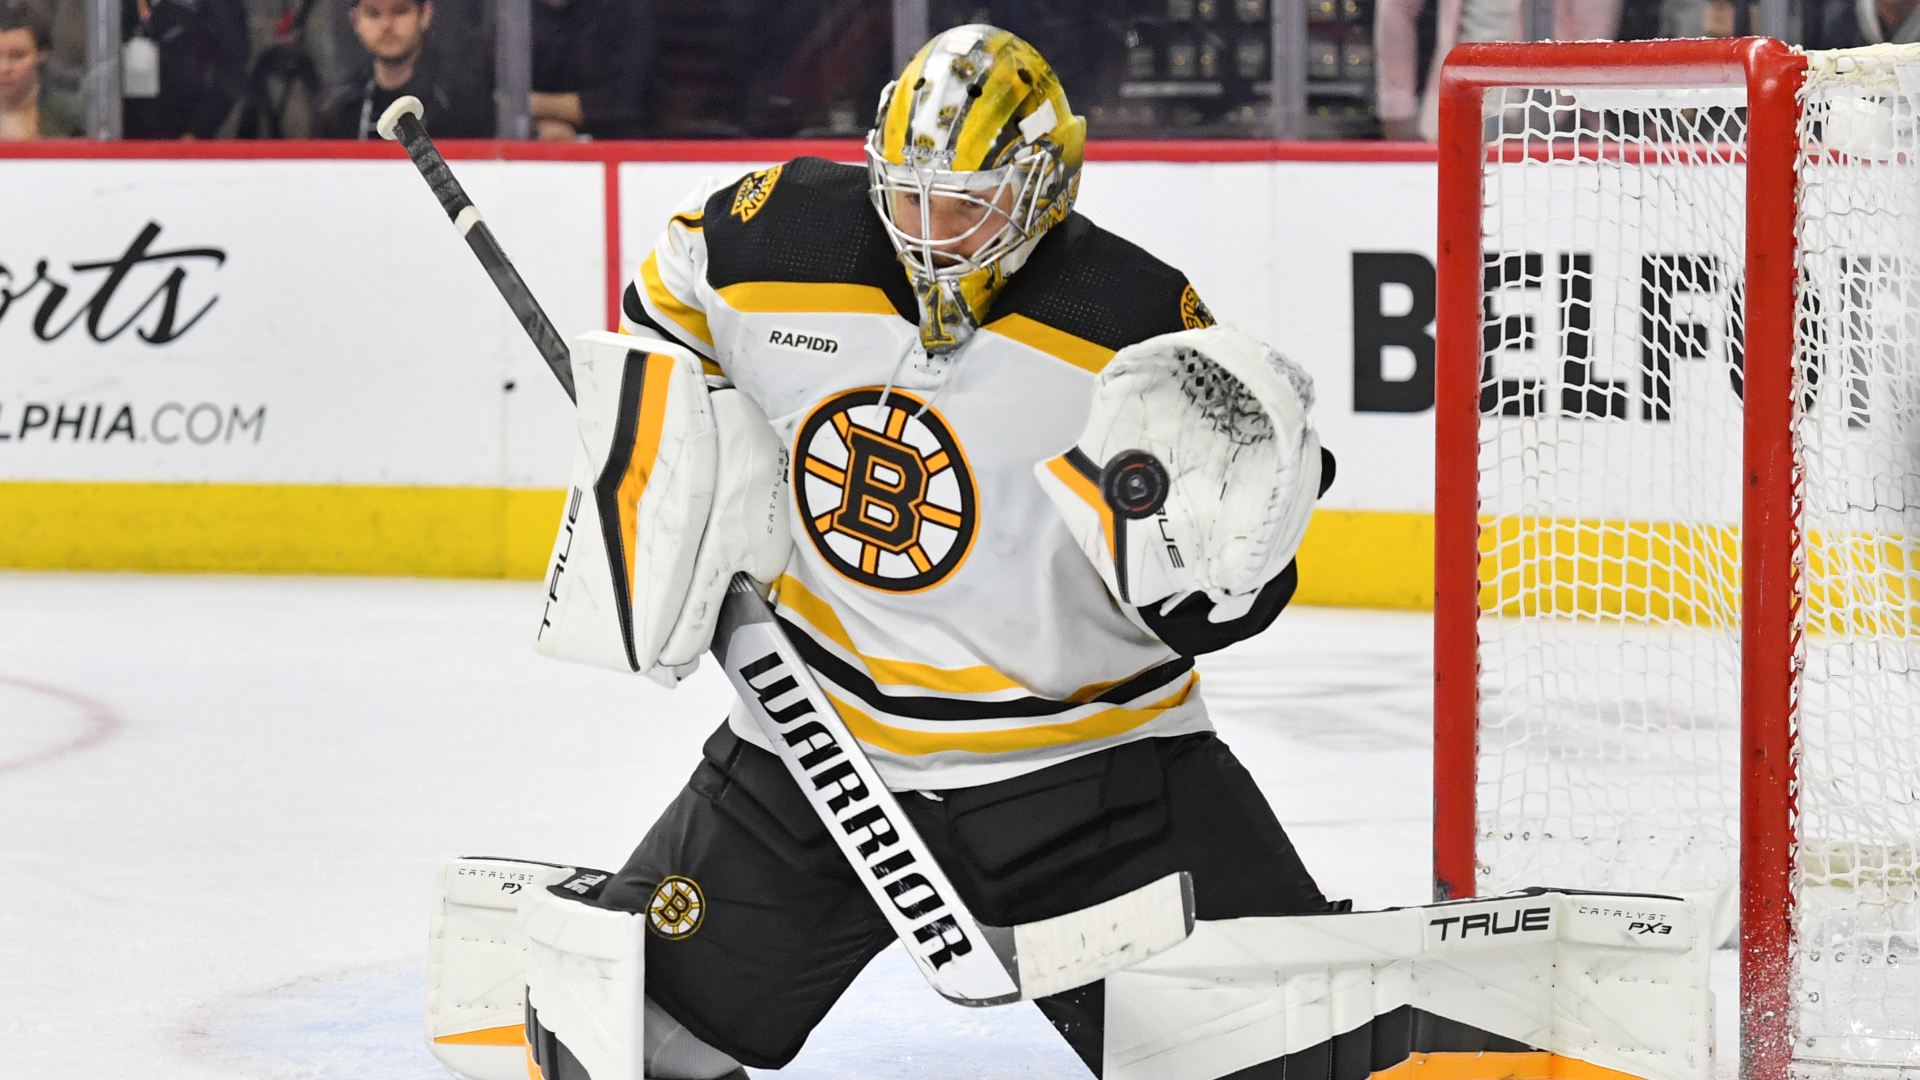 Boston Bruins: Jeremy Swayman announced as starting goaltender